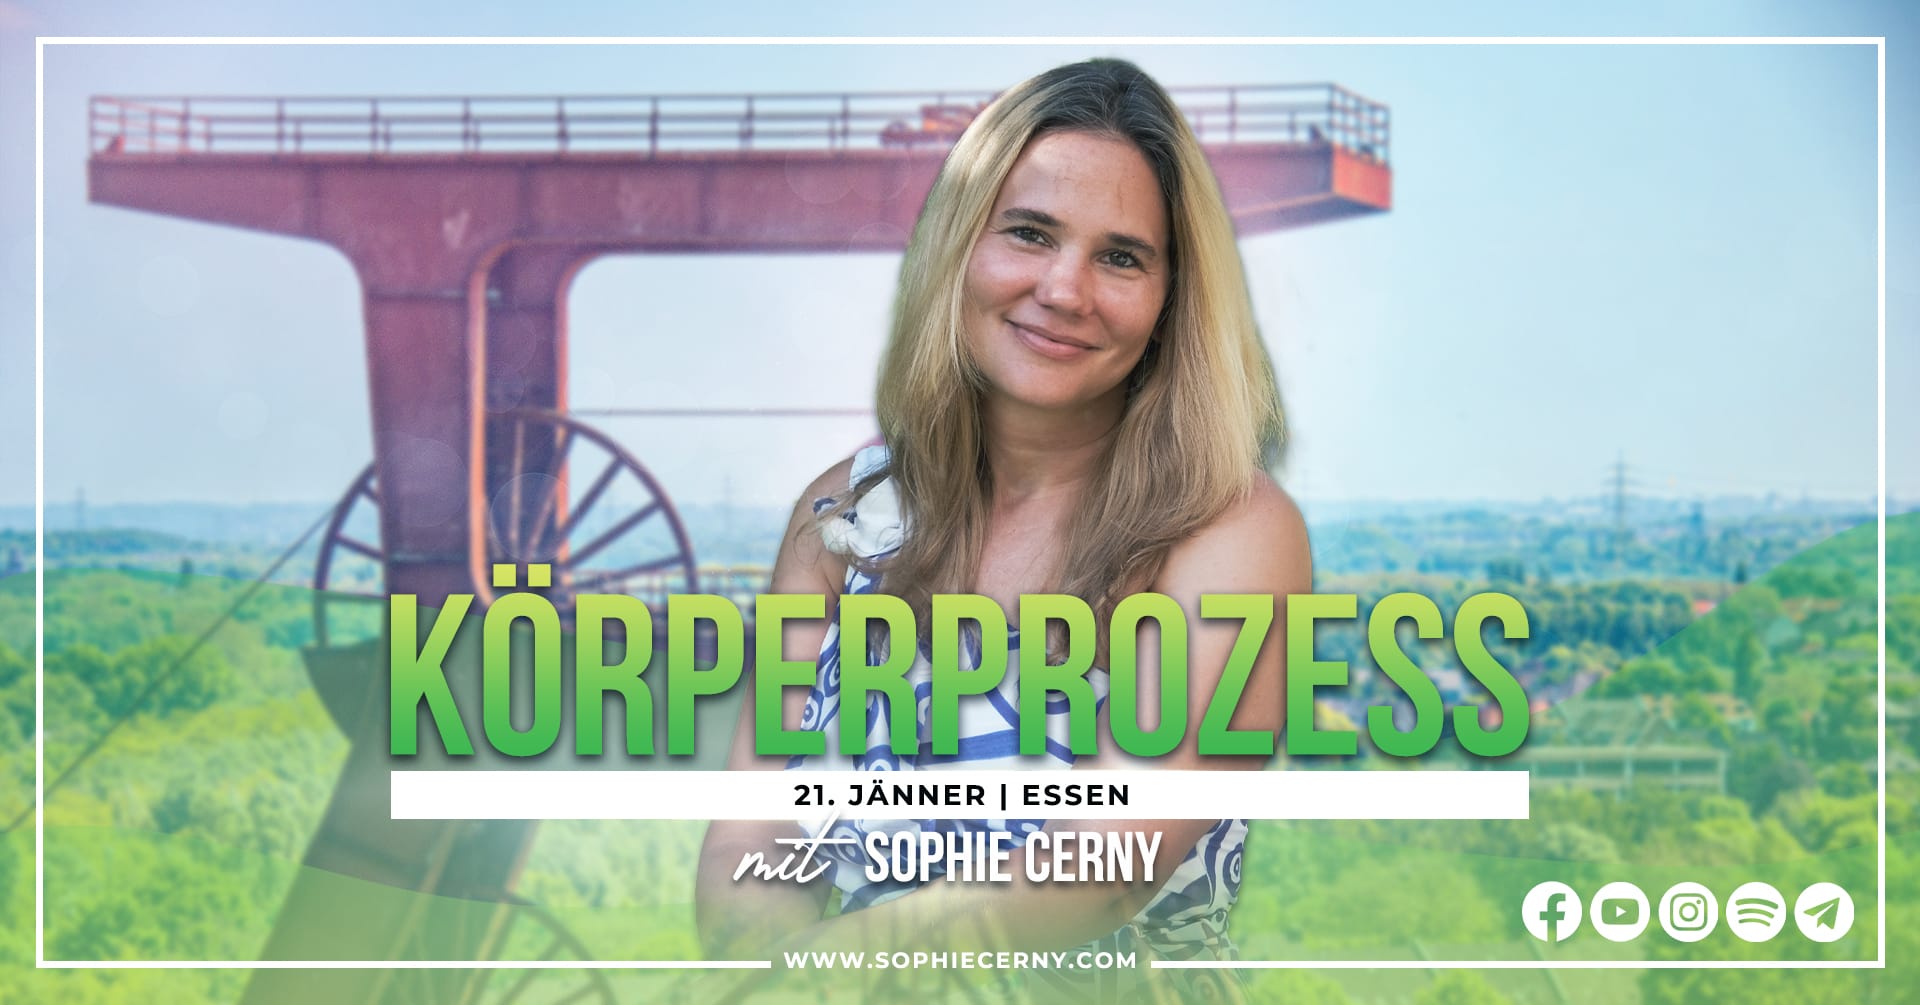 Access Körperprozess Sophie Cerny Essen